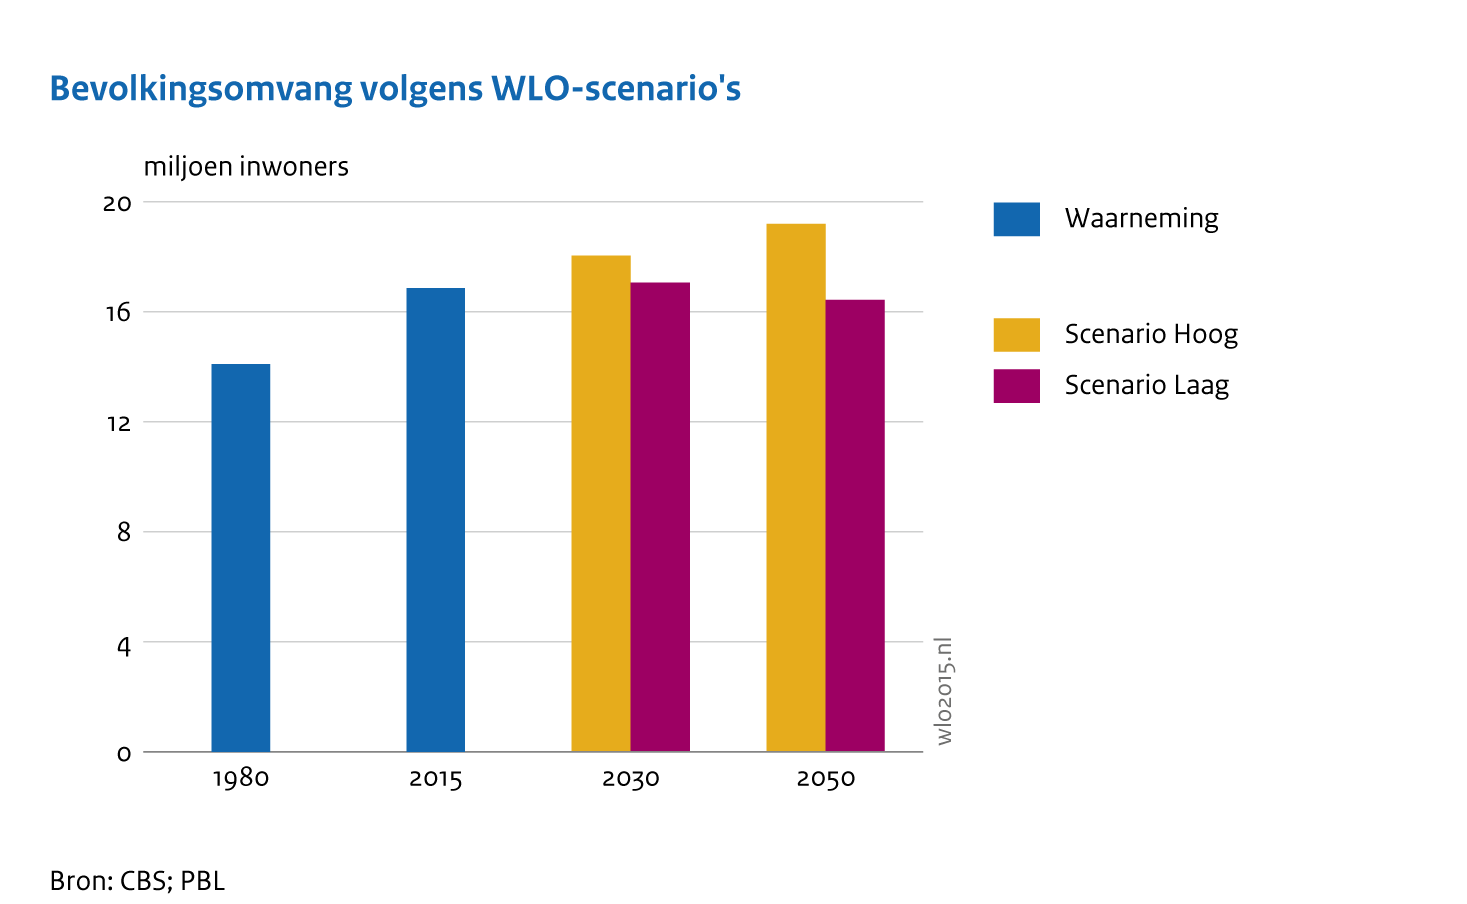 Bevolkingsomvang Nederland in miljoen inwoners in 1980, 2015 en - volgens WLO-scenario's - in 2030 en 2050. 